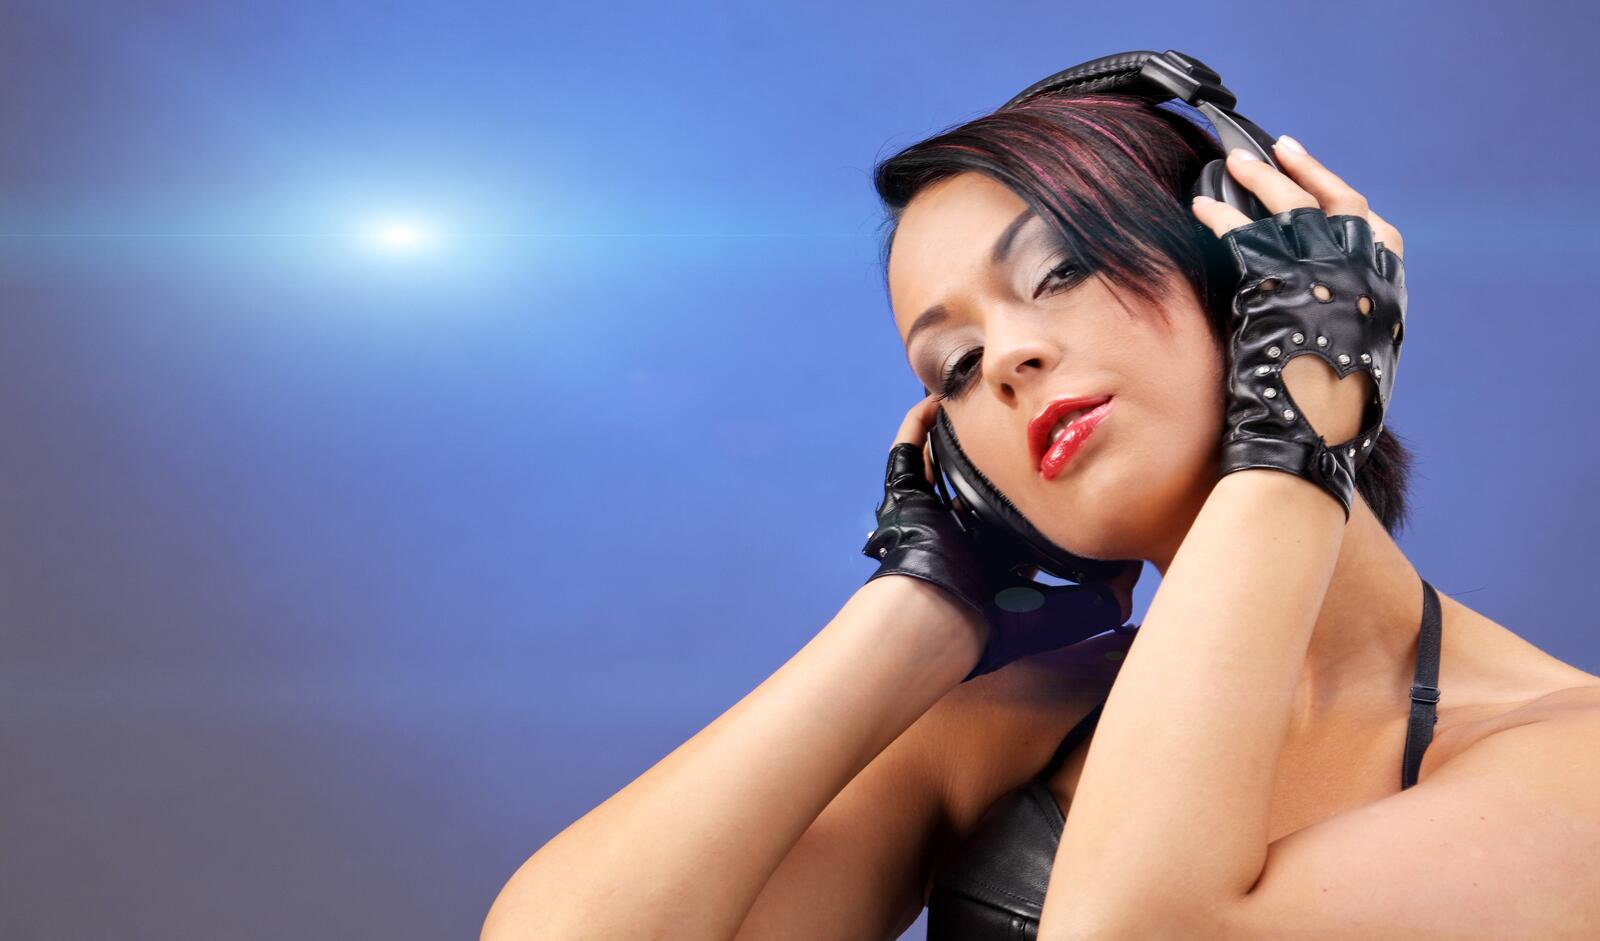 Wallpapers headphones disco girl music on the desktop